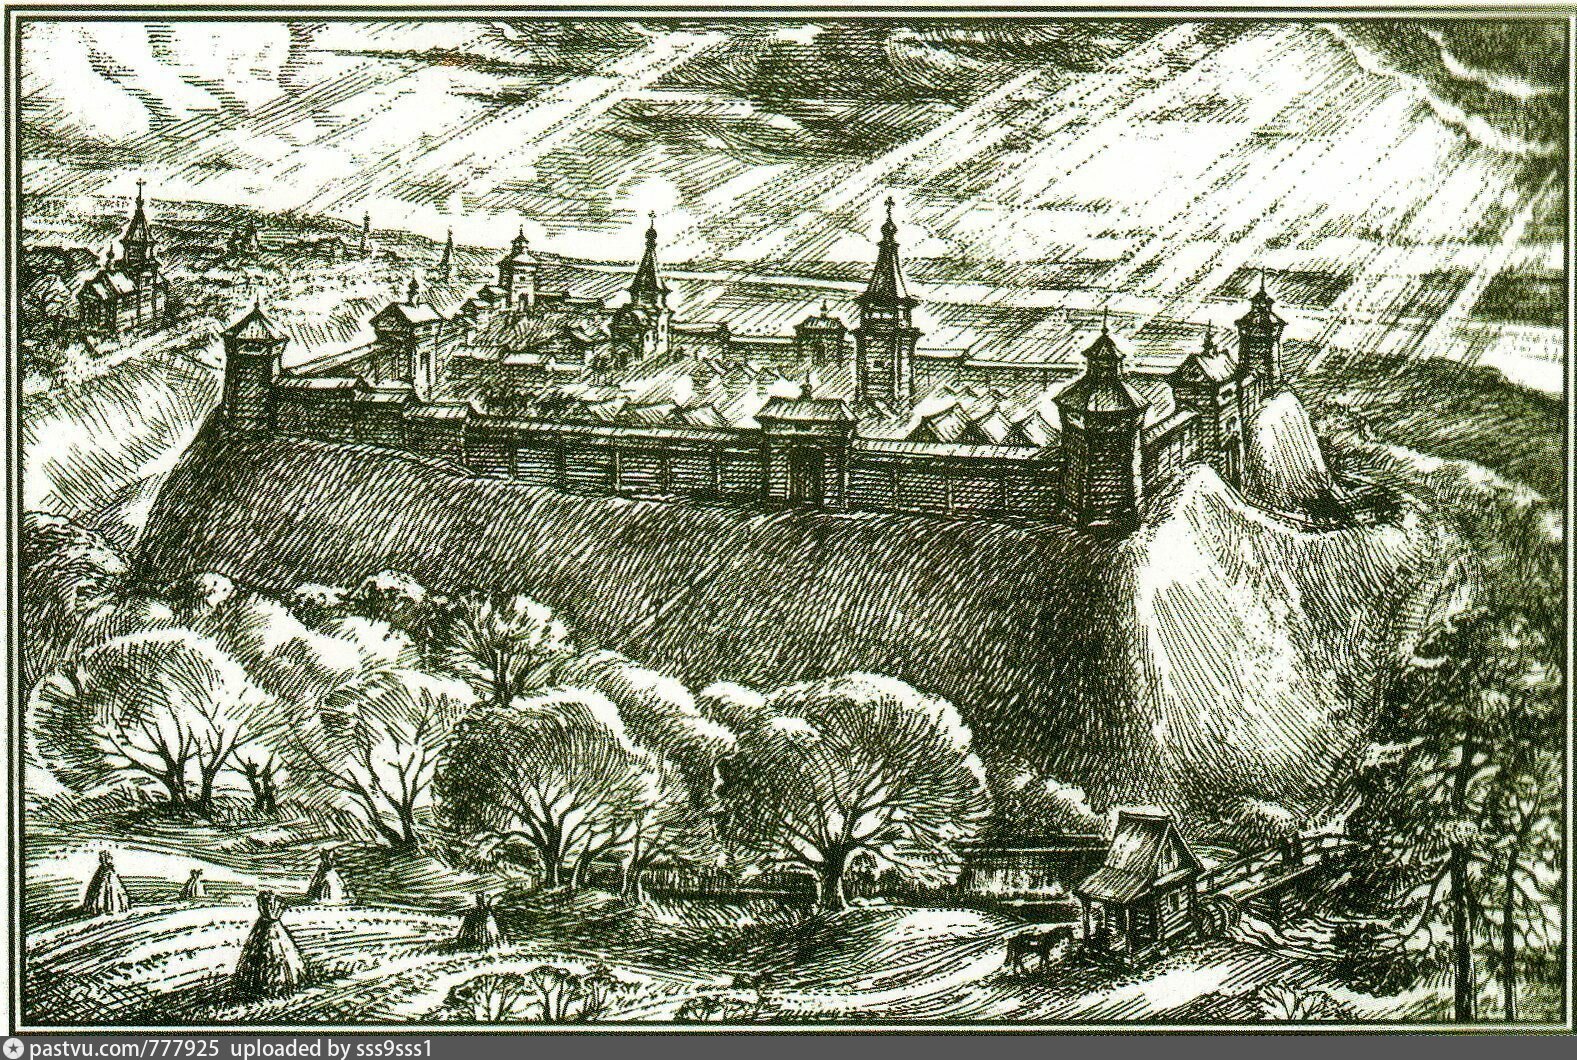 Кашира крепость Старая крепость